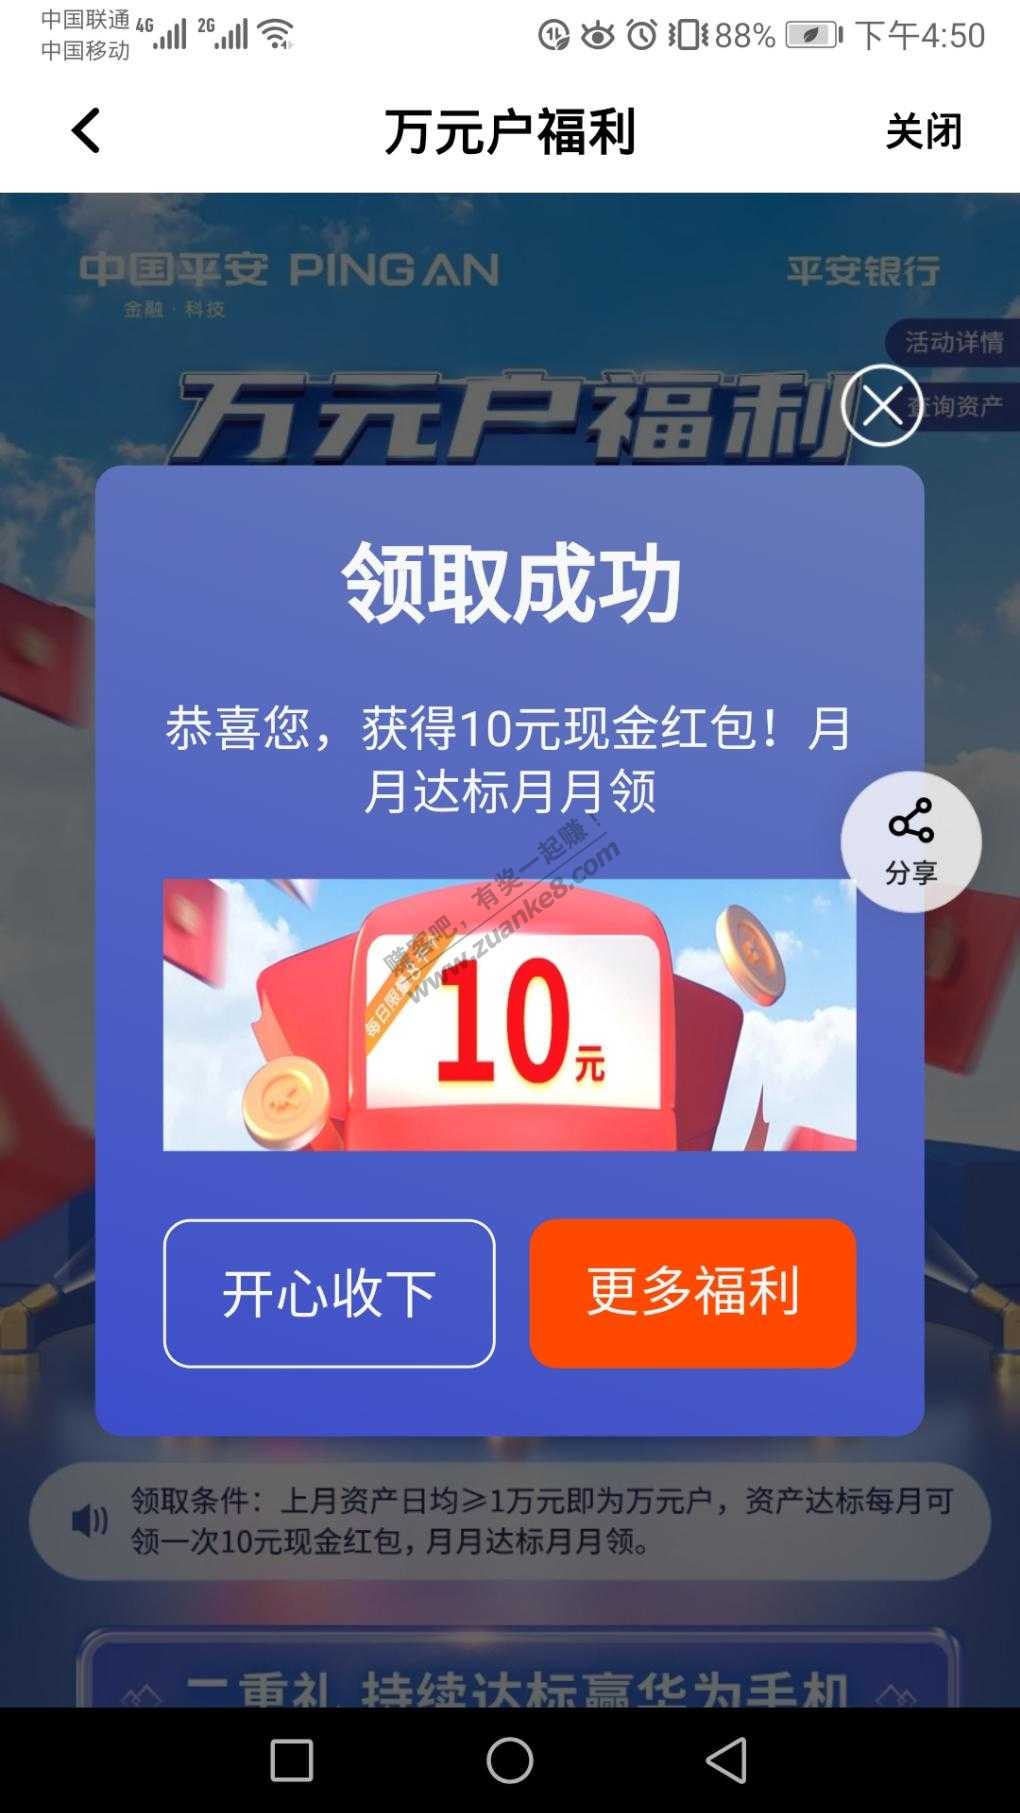 平安10毛还有-惠小助(52huixz.com)